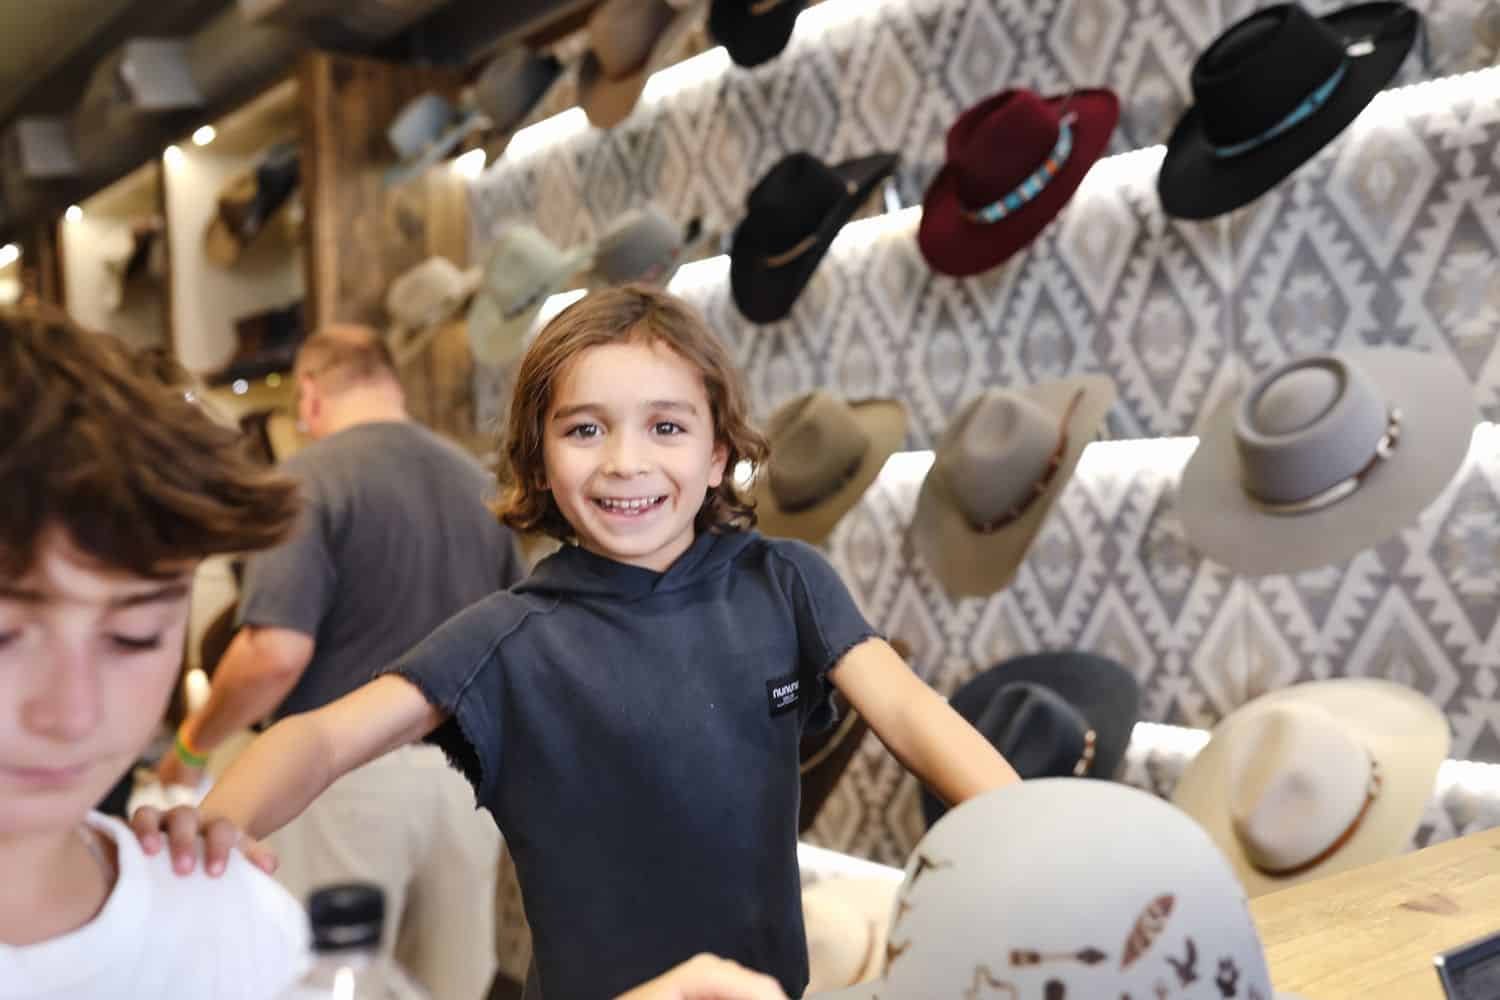 Boy in a hat store